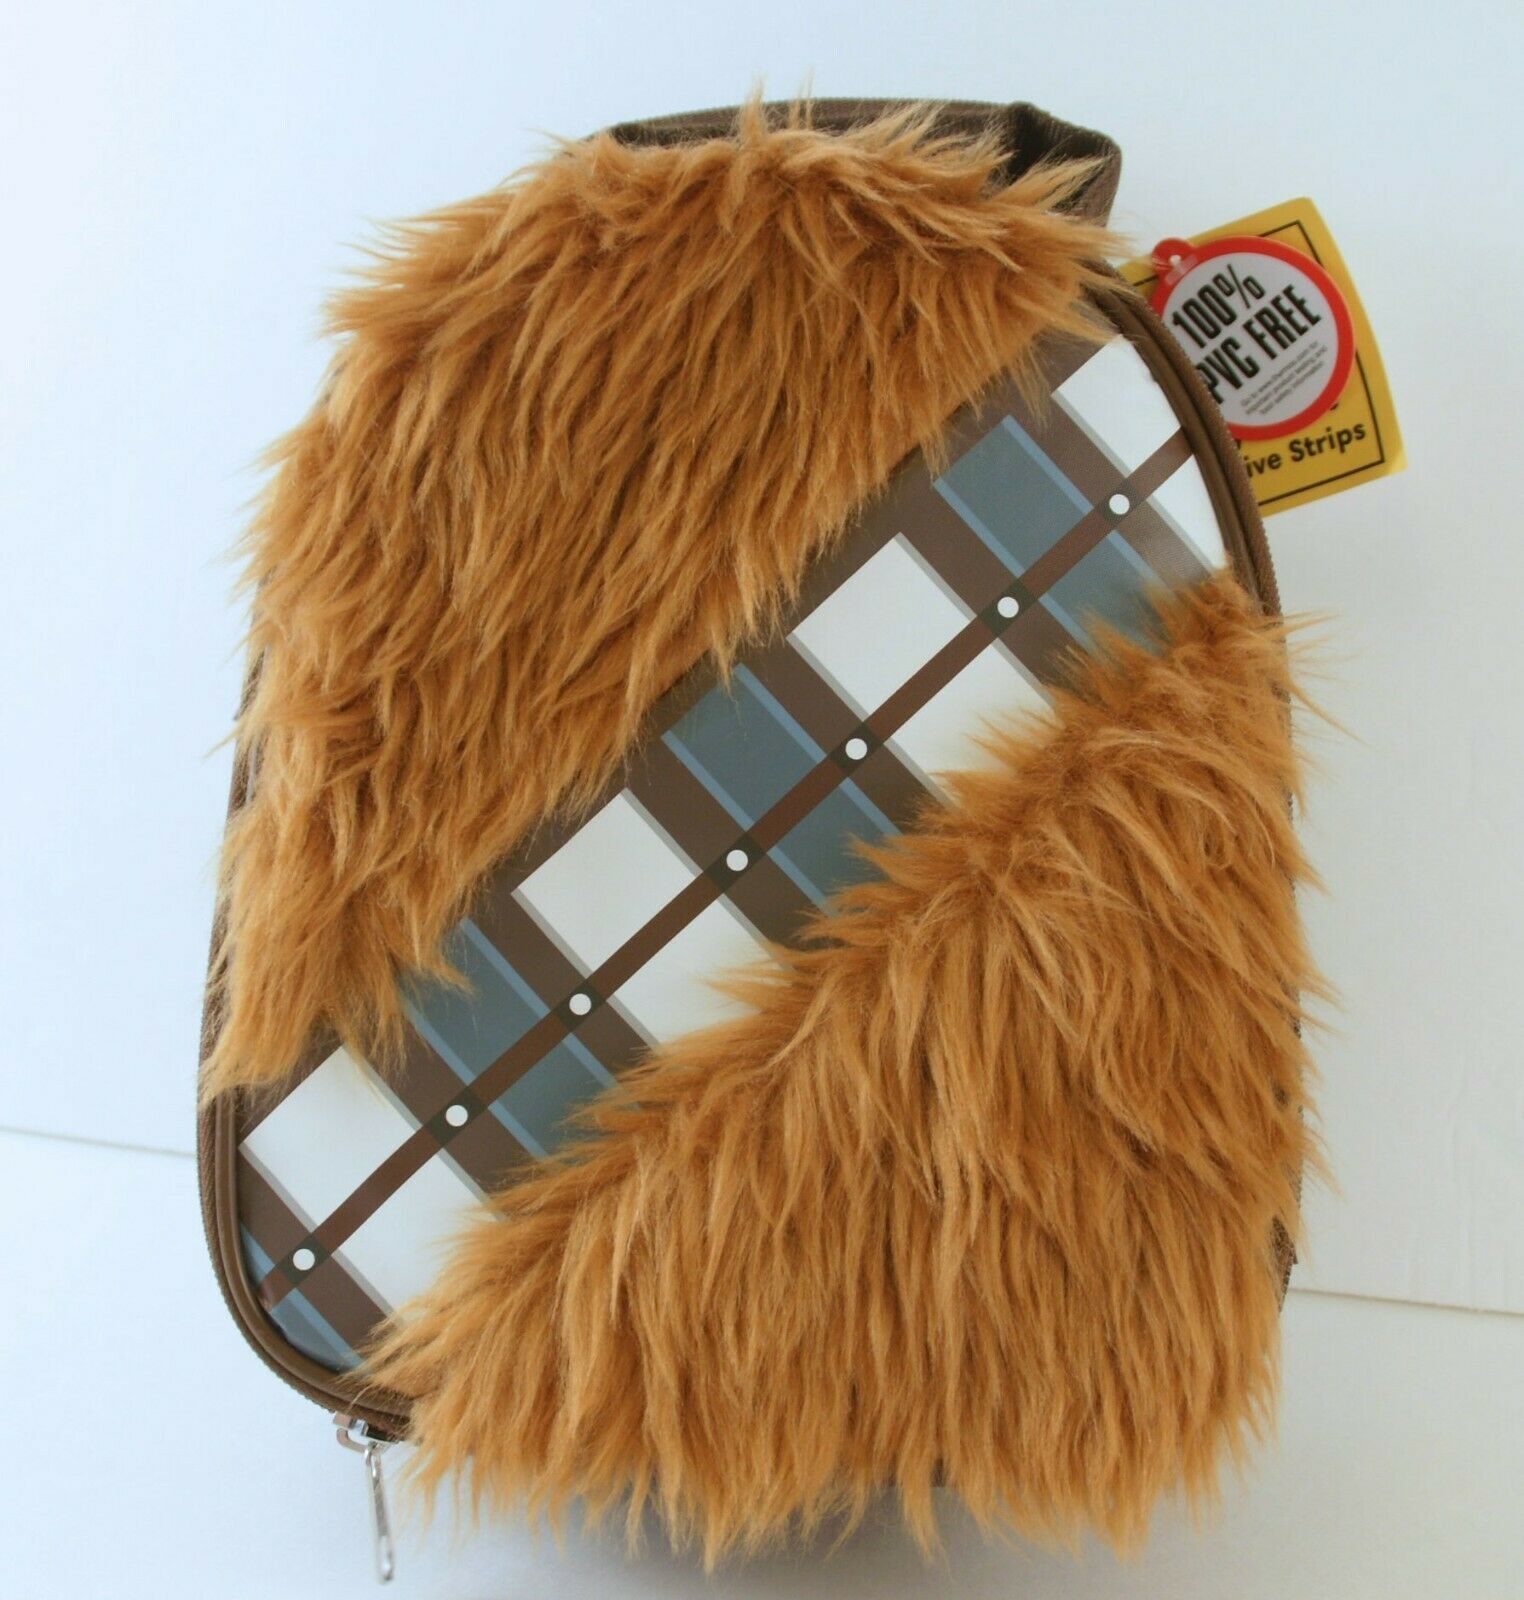 Star Wars Chewbacca Lunch Bag Fuzzy Disney Thermos Brand Kids Adult Boys Girls - $10.88